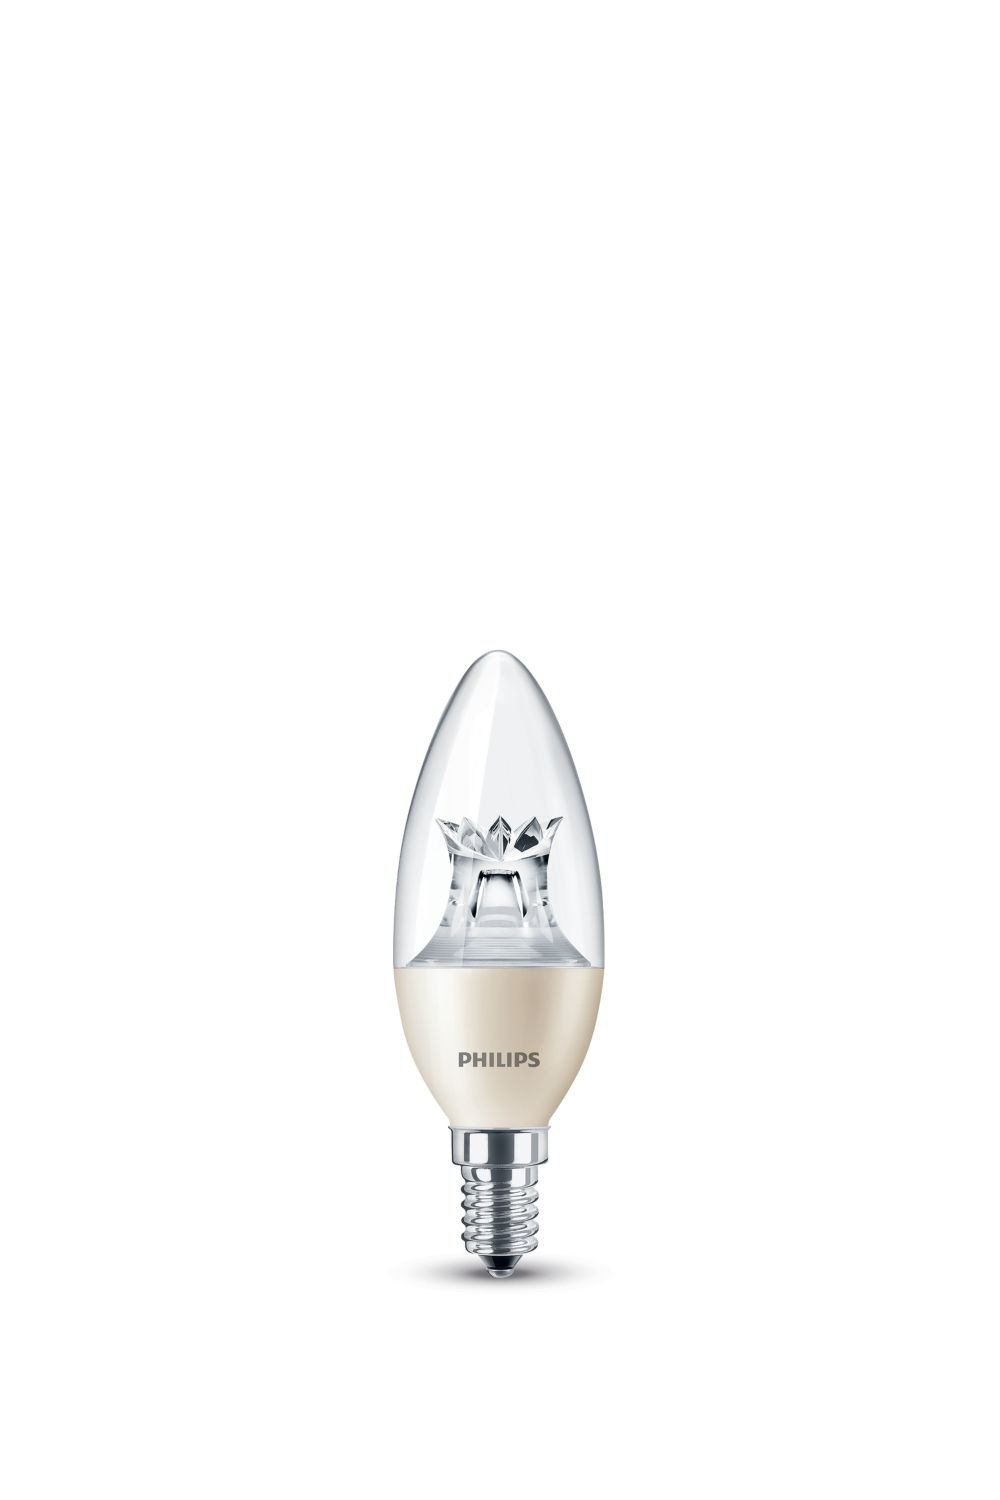 Philips LED lamp E14 6W 470Lm kaars helder dimbaar Beige